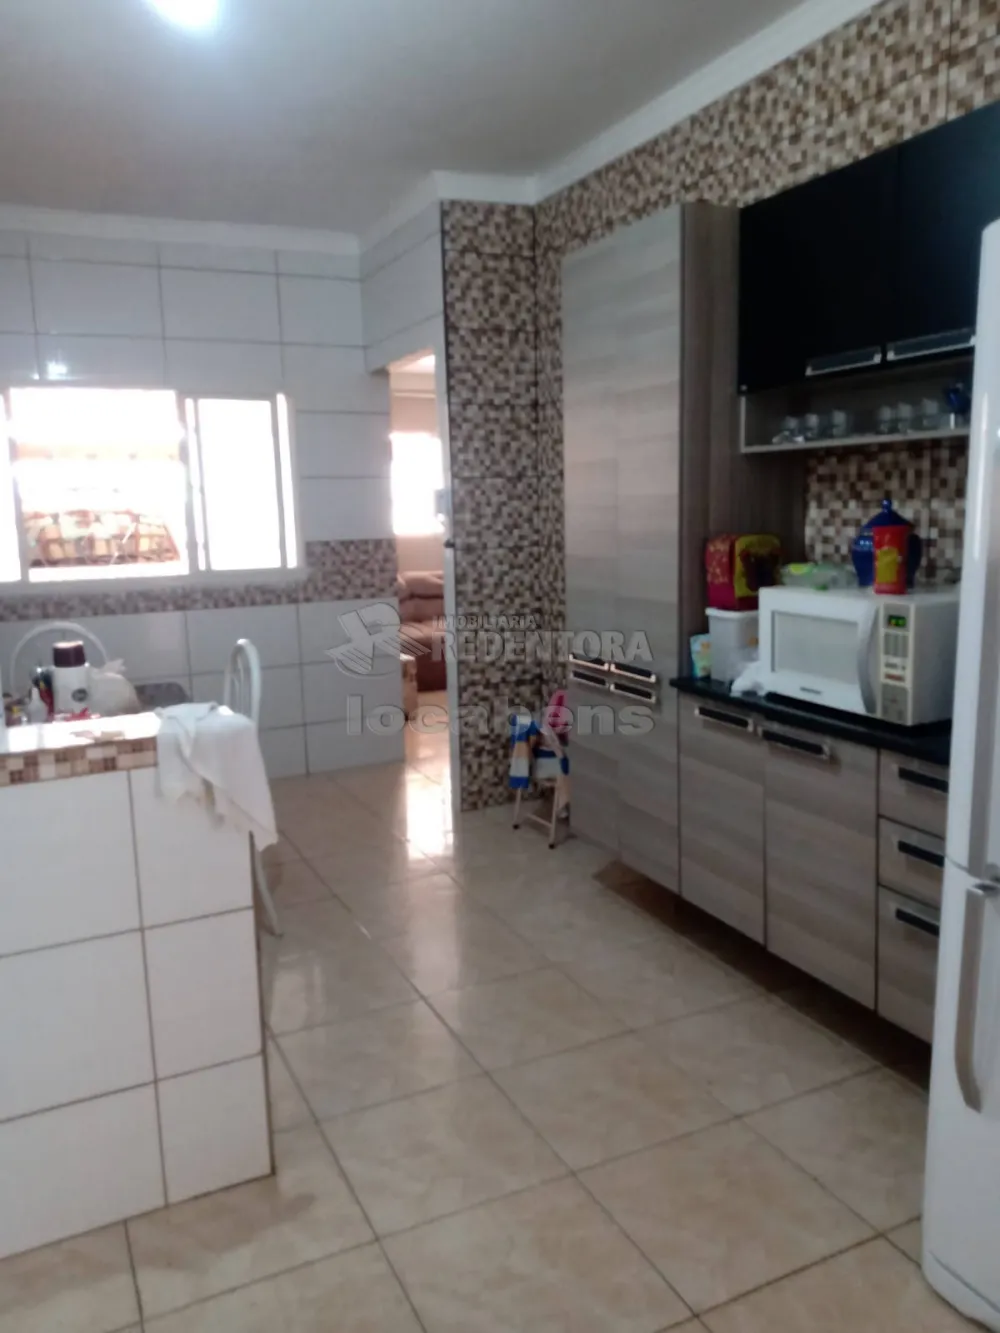 Alugar Casa / Padrão em São José do Rio Preto R$ 1.200,00 - Foto 5